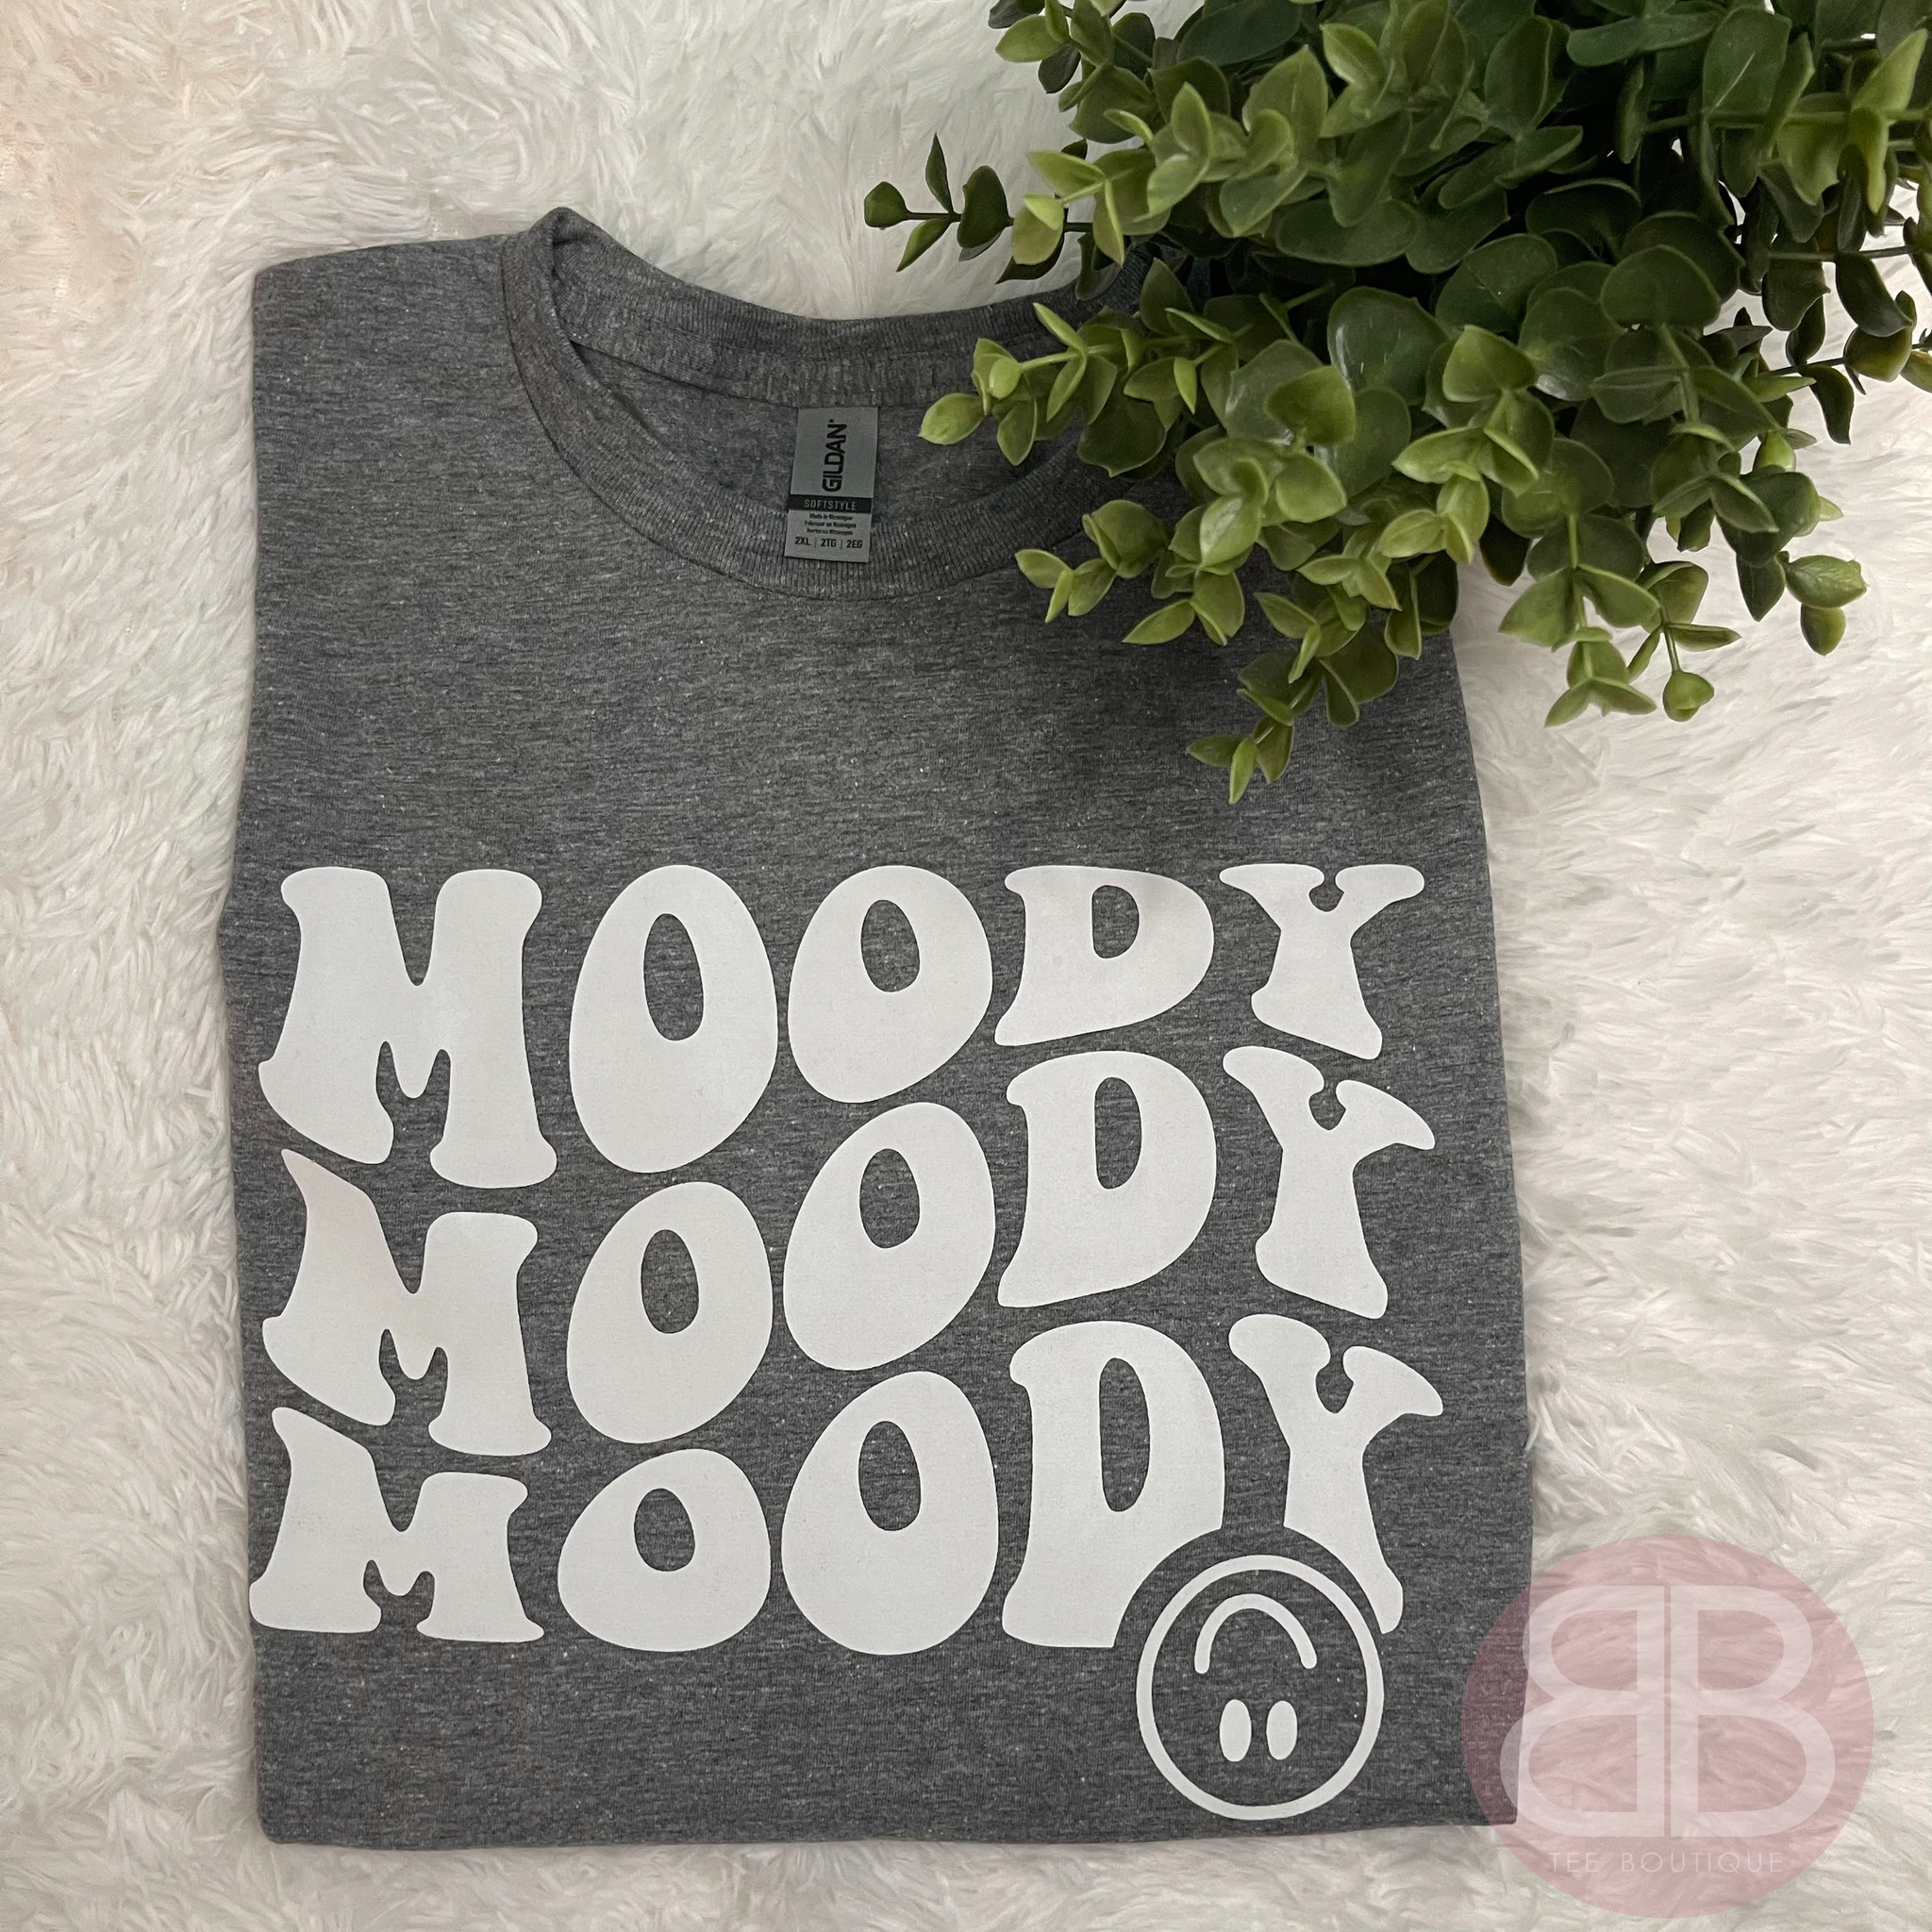 Moody Moody Moody